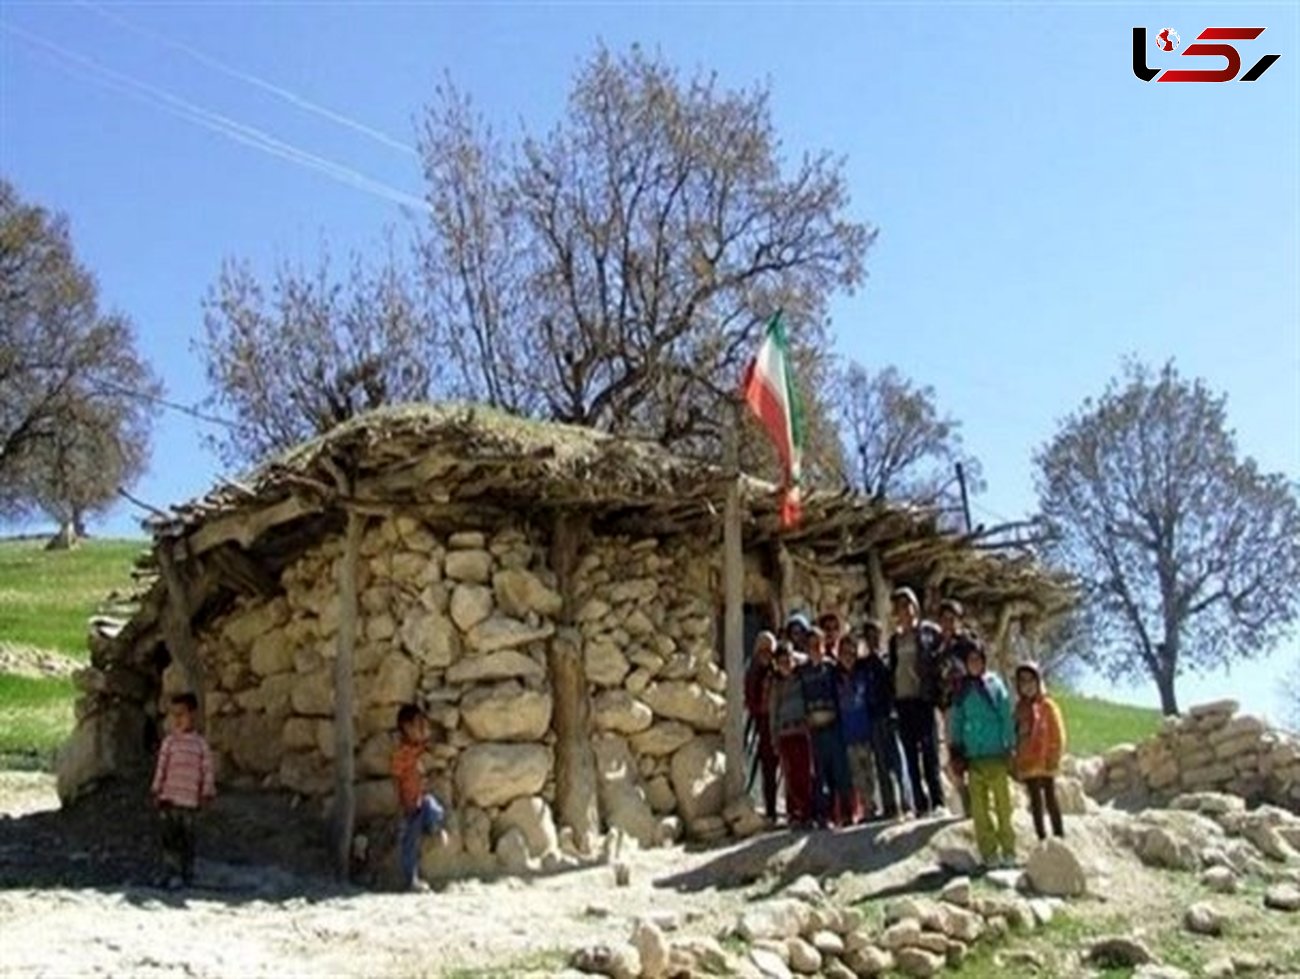 تلاش برای حذف 4 هزار مدرسه سنگی / وجود 300 مدرسه کانکسی در خوزستان + فیلم